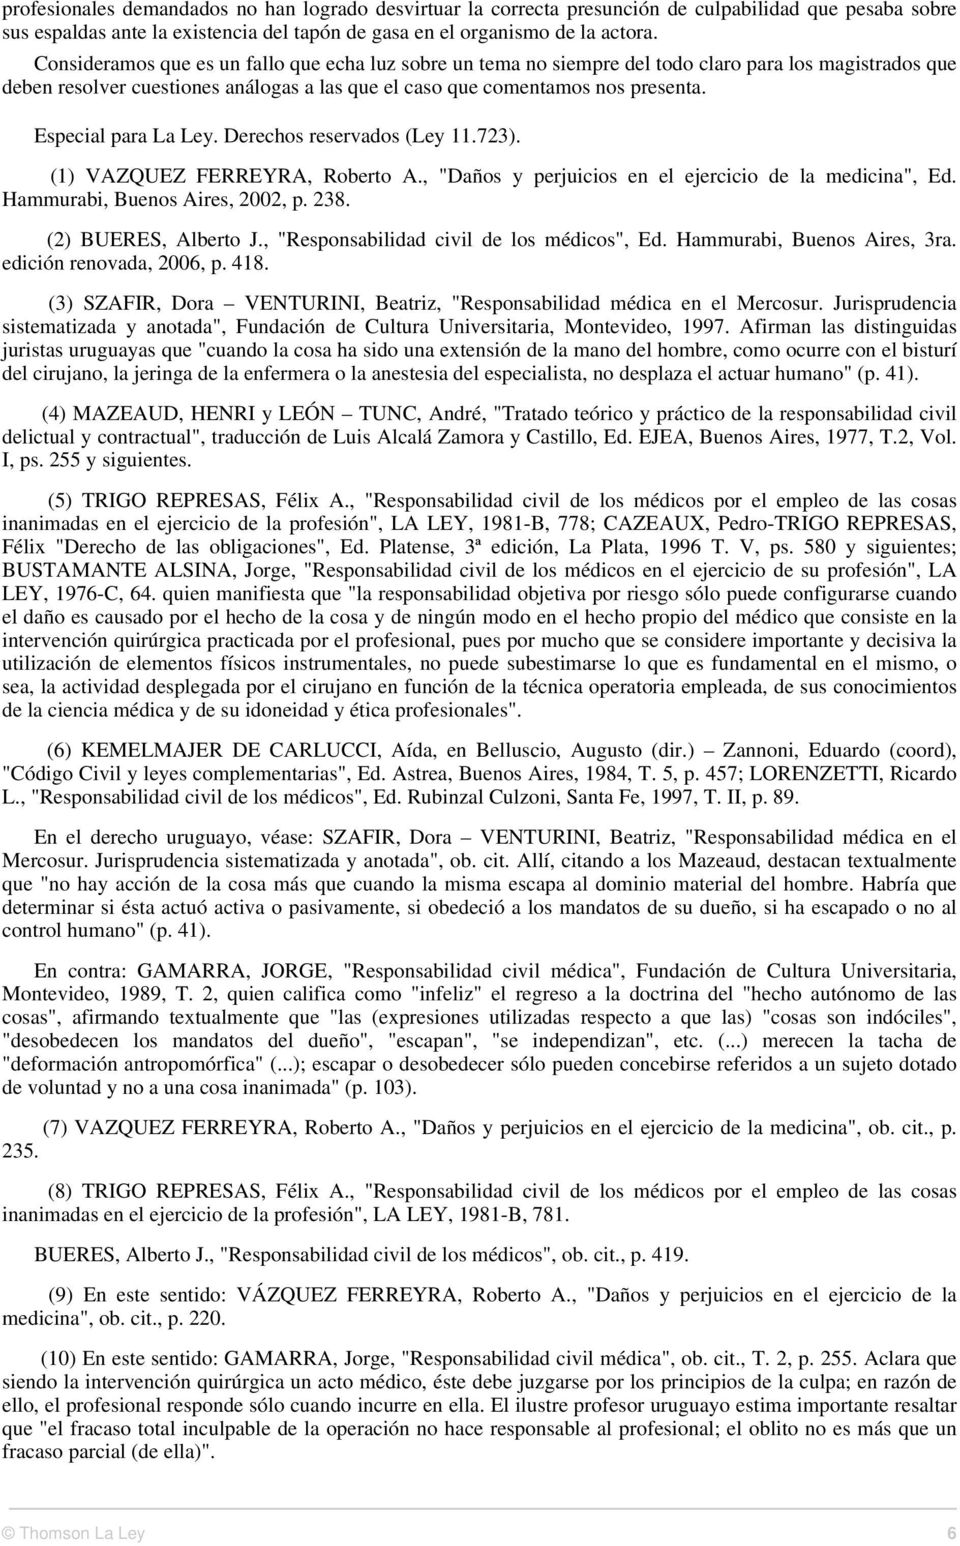 Especial para La Ley. Derechos reservados (Ley 11.723). (1) VAZQUEZ FERREYRA, Roberto A., "Daños y perjuicios en el ejercicio de la medicina", Ed. Hammurabi, Buenos Aires, 2002, p. 238.